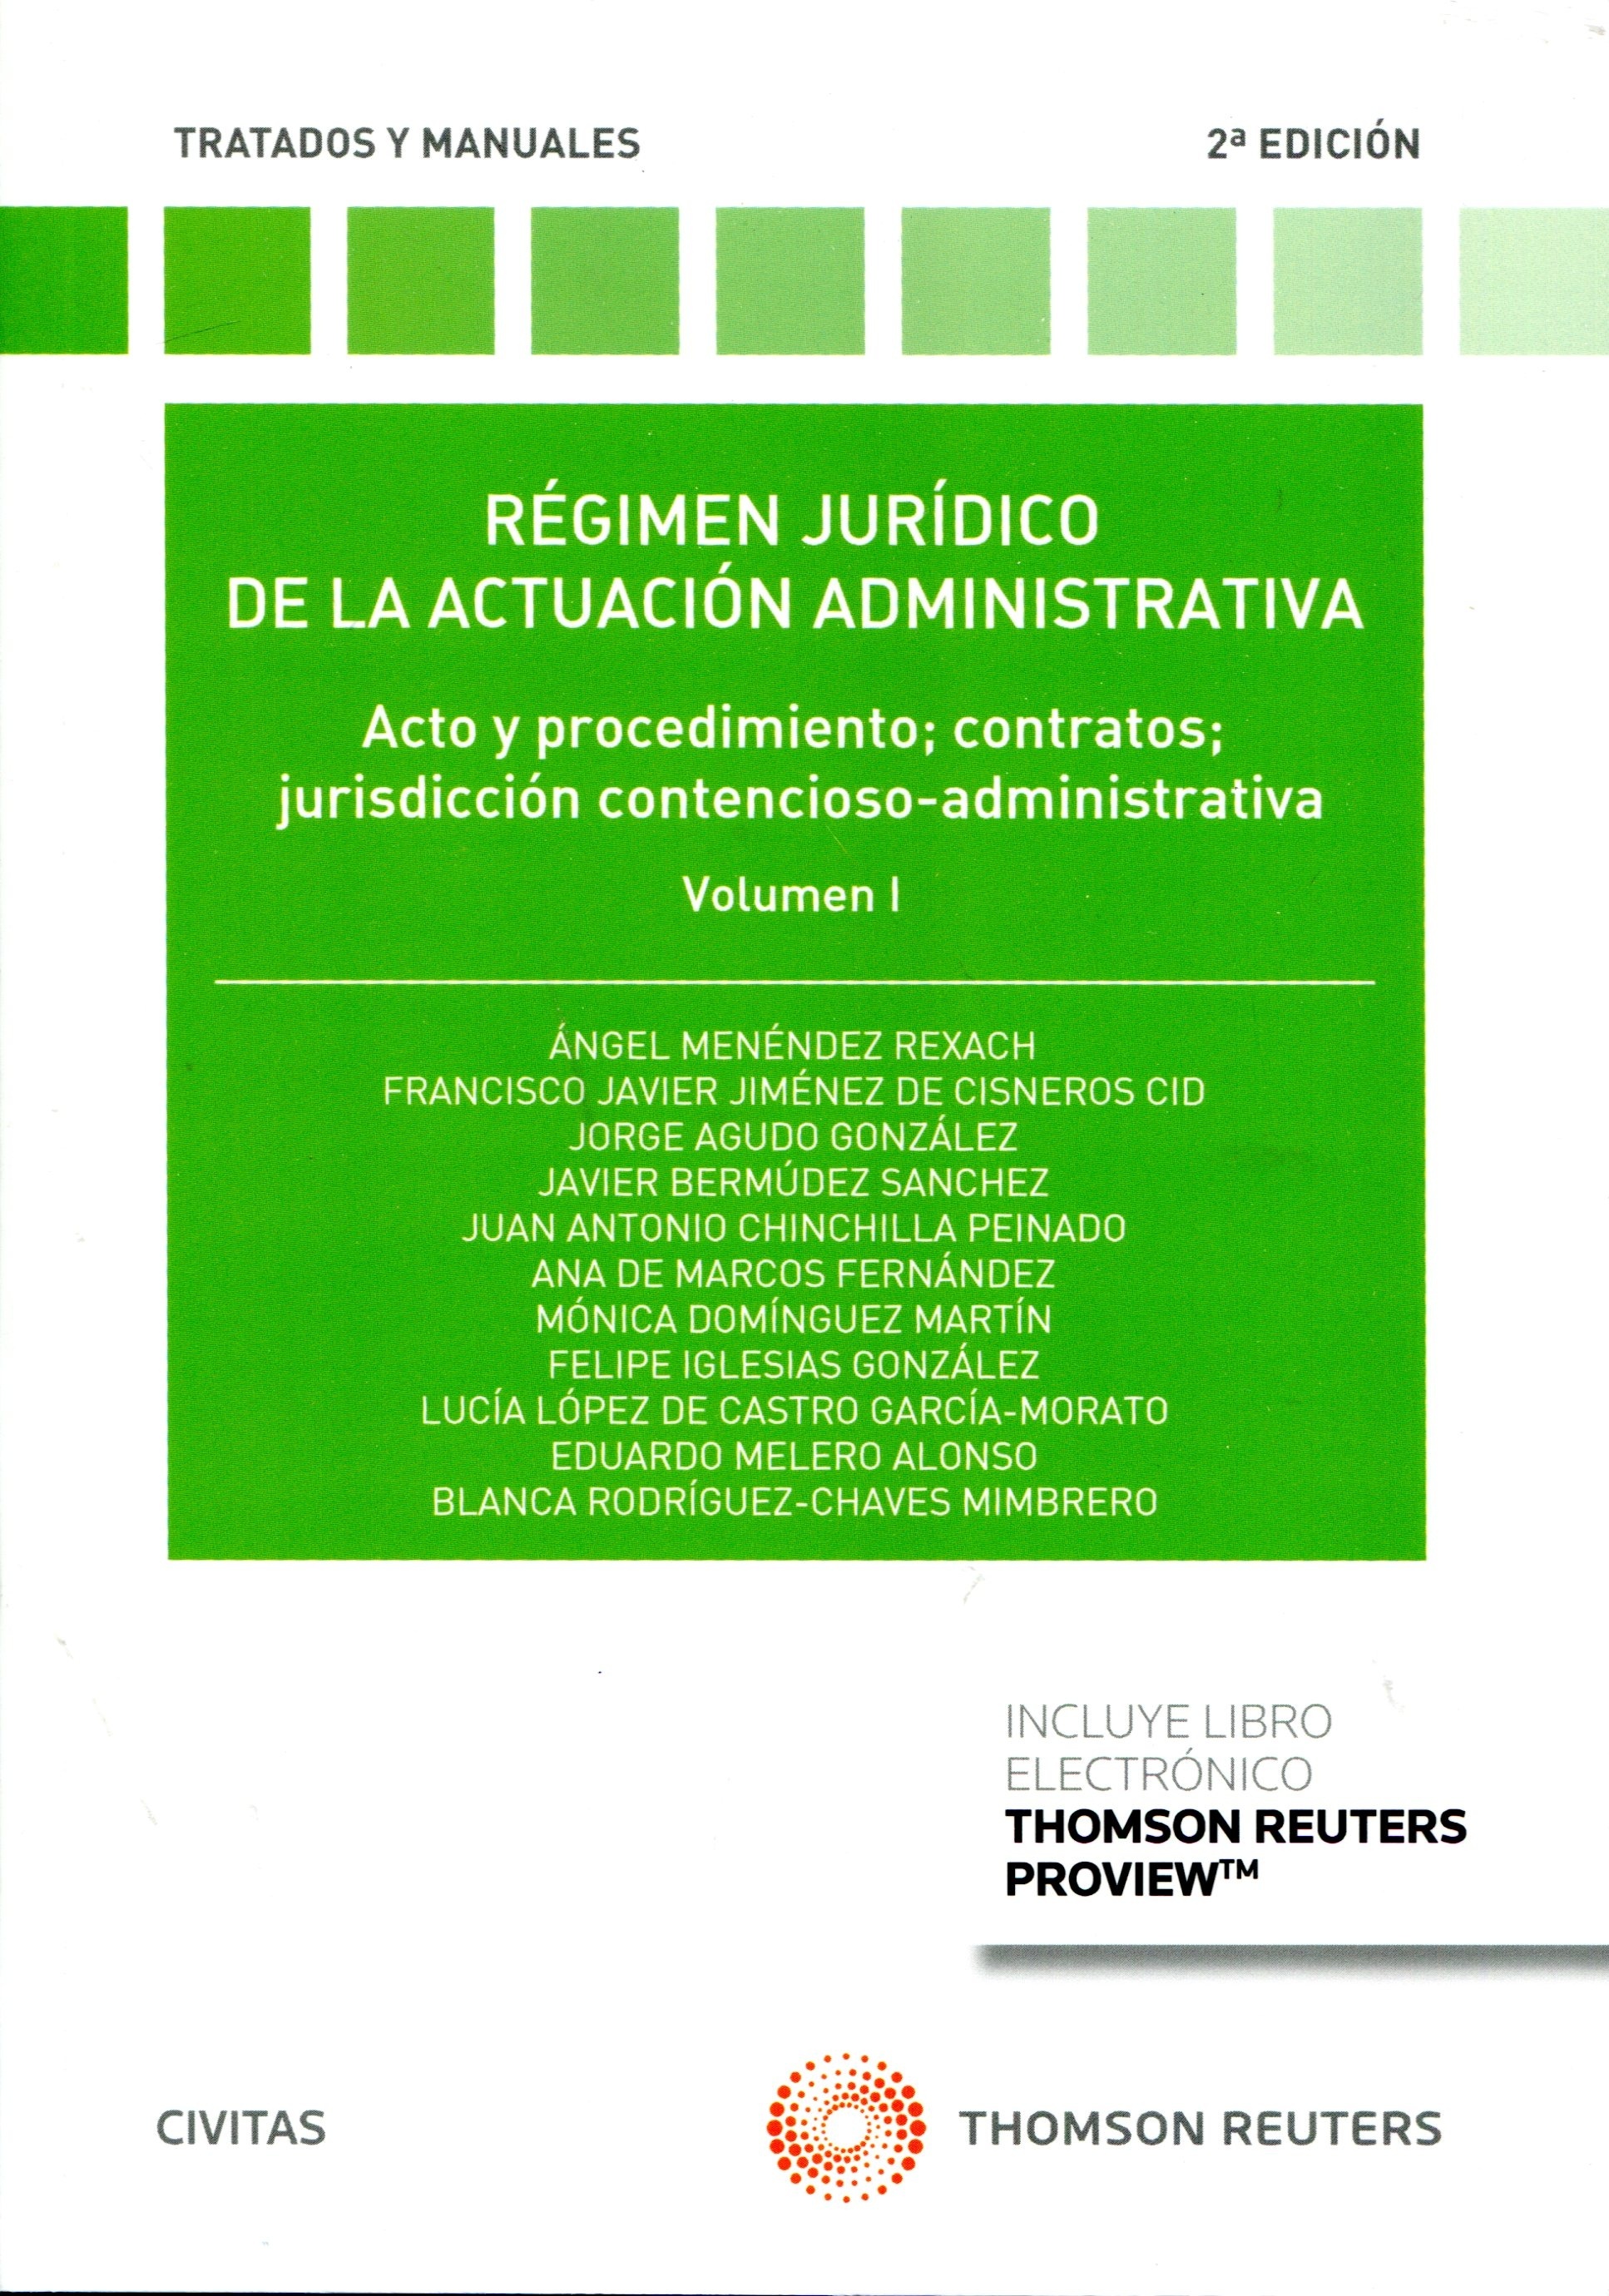 Régimen Jurídico de la Actuación Administrativa Vol.I "Acto y procedimiento; contratos; jurisdicción contencioso-administrativa"